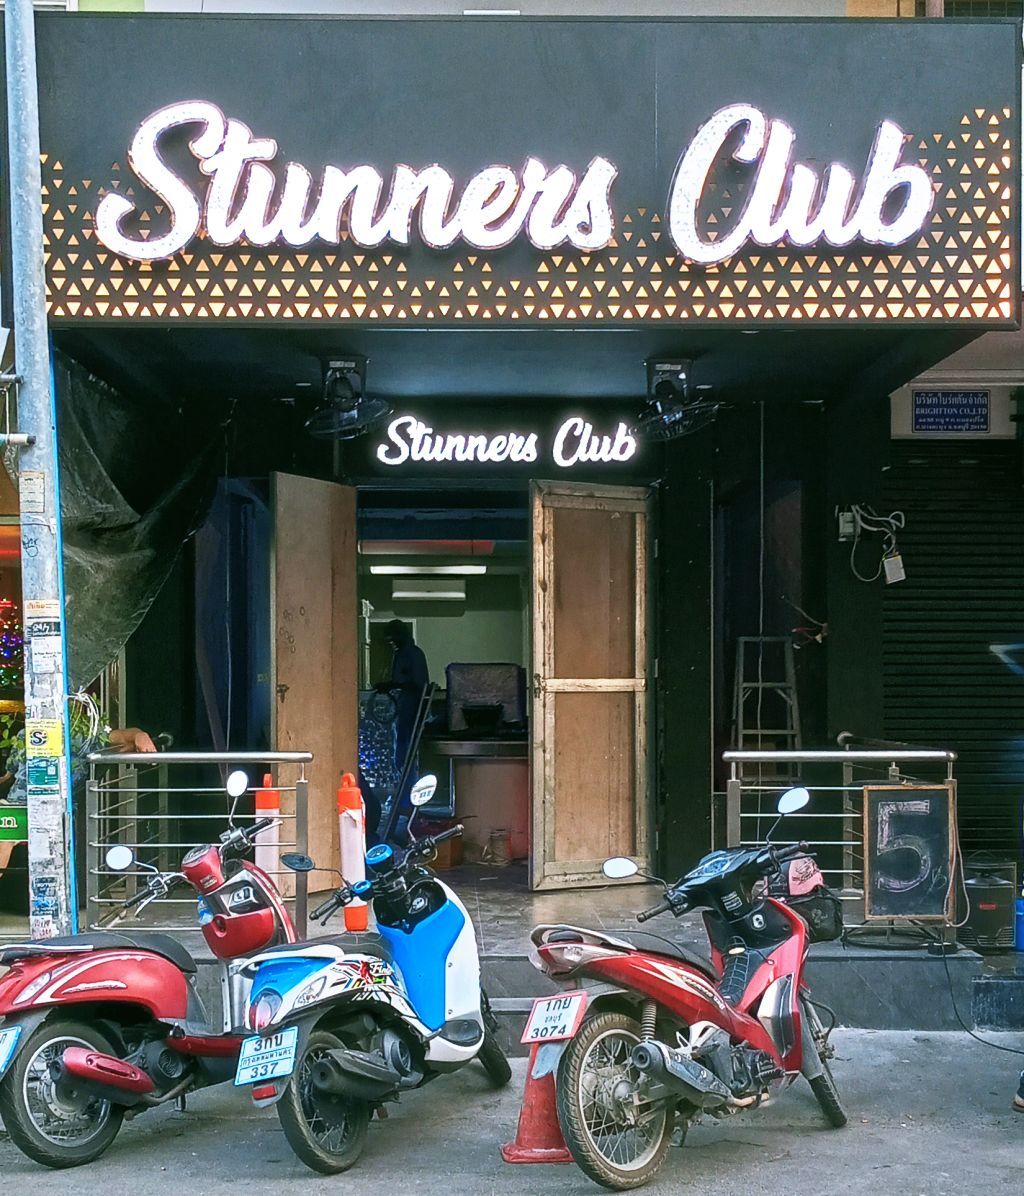 Stunners Club